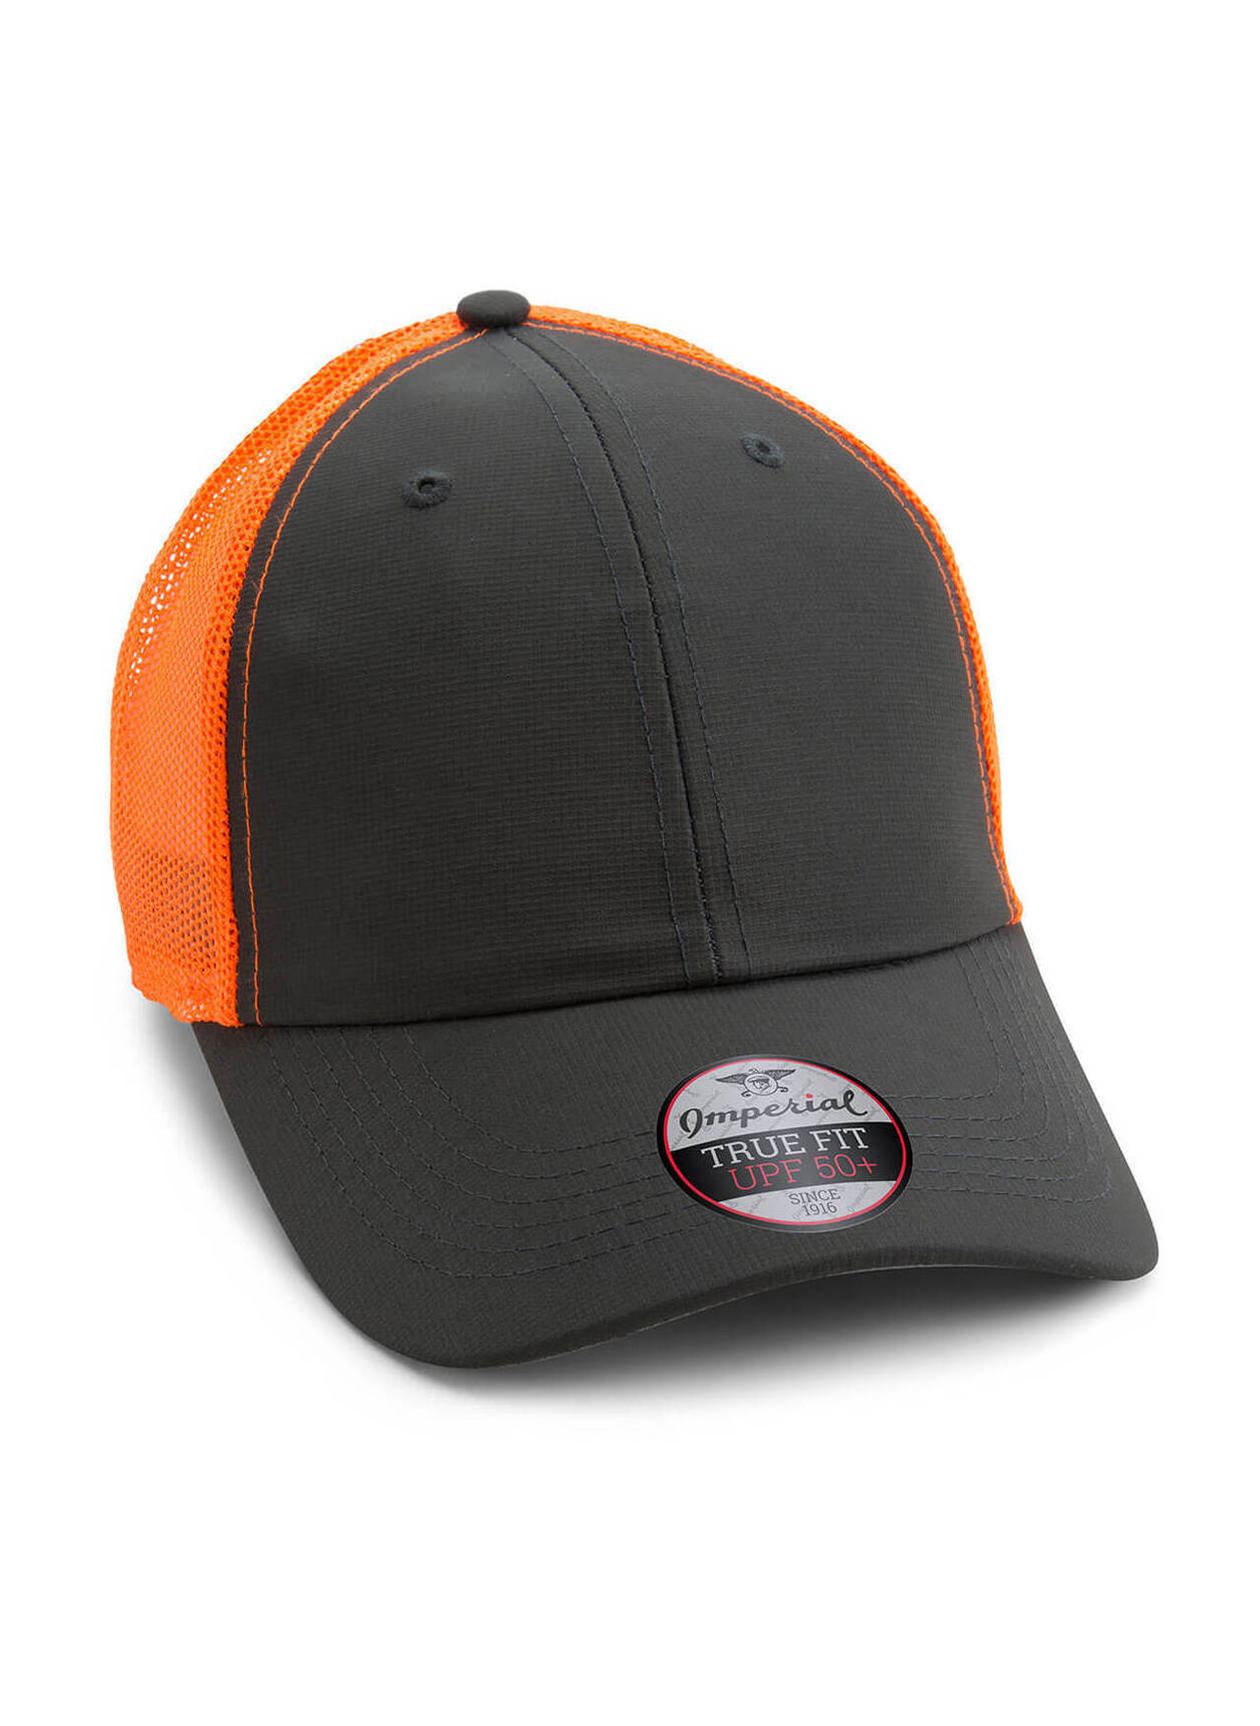 Imperial Dark Grey / Neon Orange Structured Performance Meshback Hat